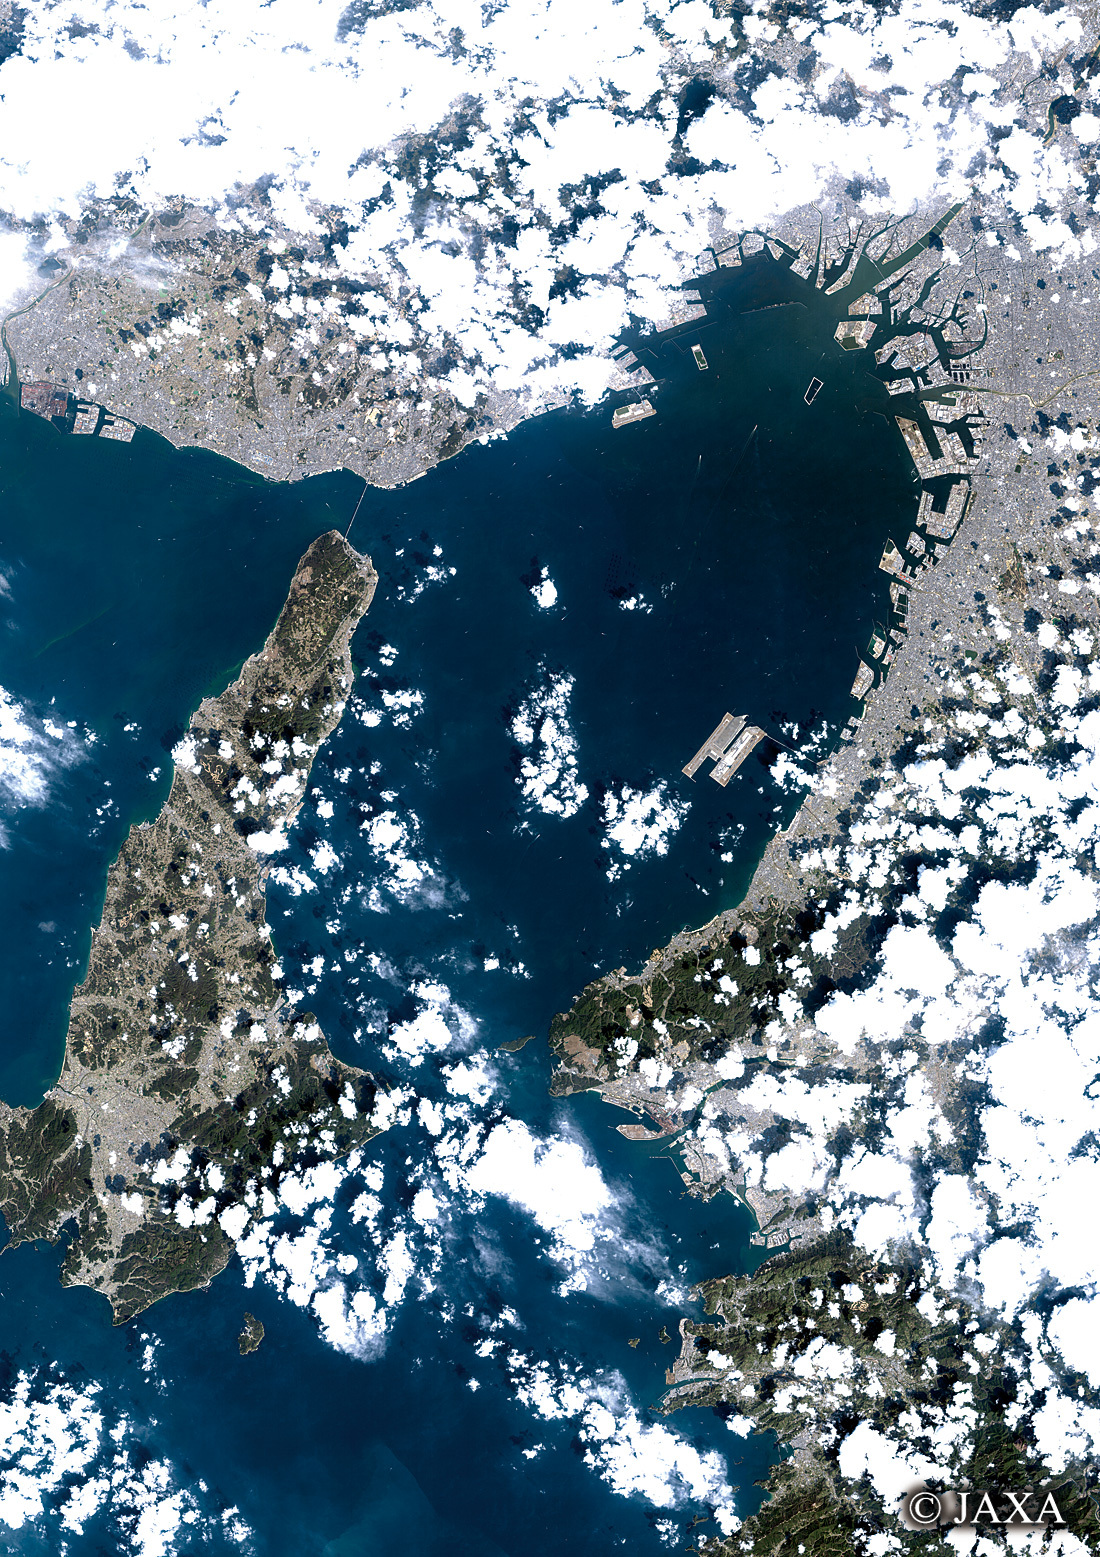 だいちから見た日本の都市 大阪湾周辺:衛星画像